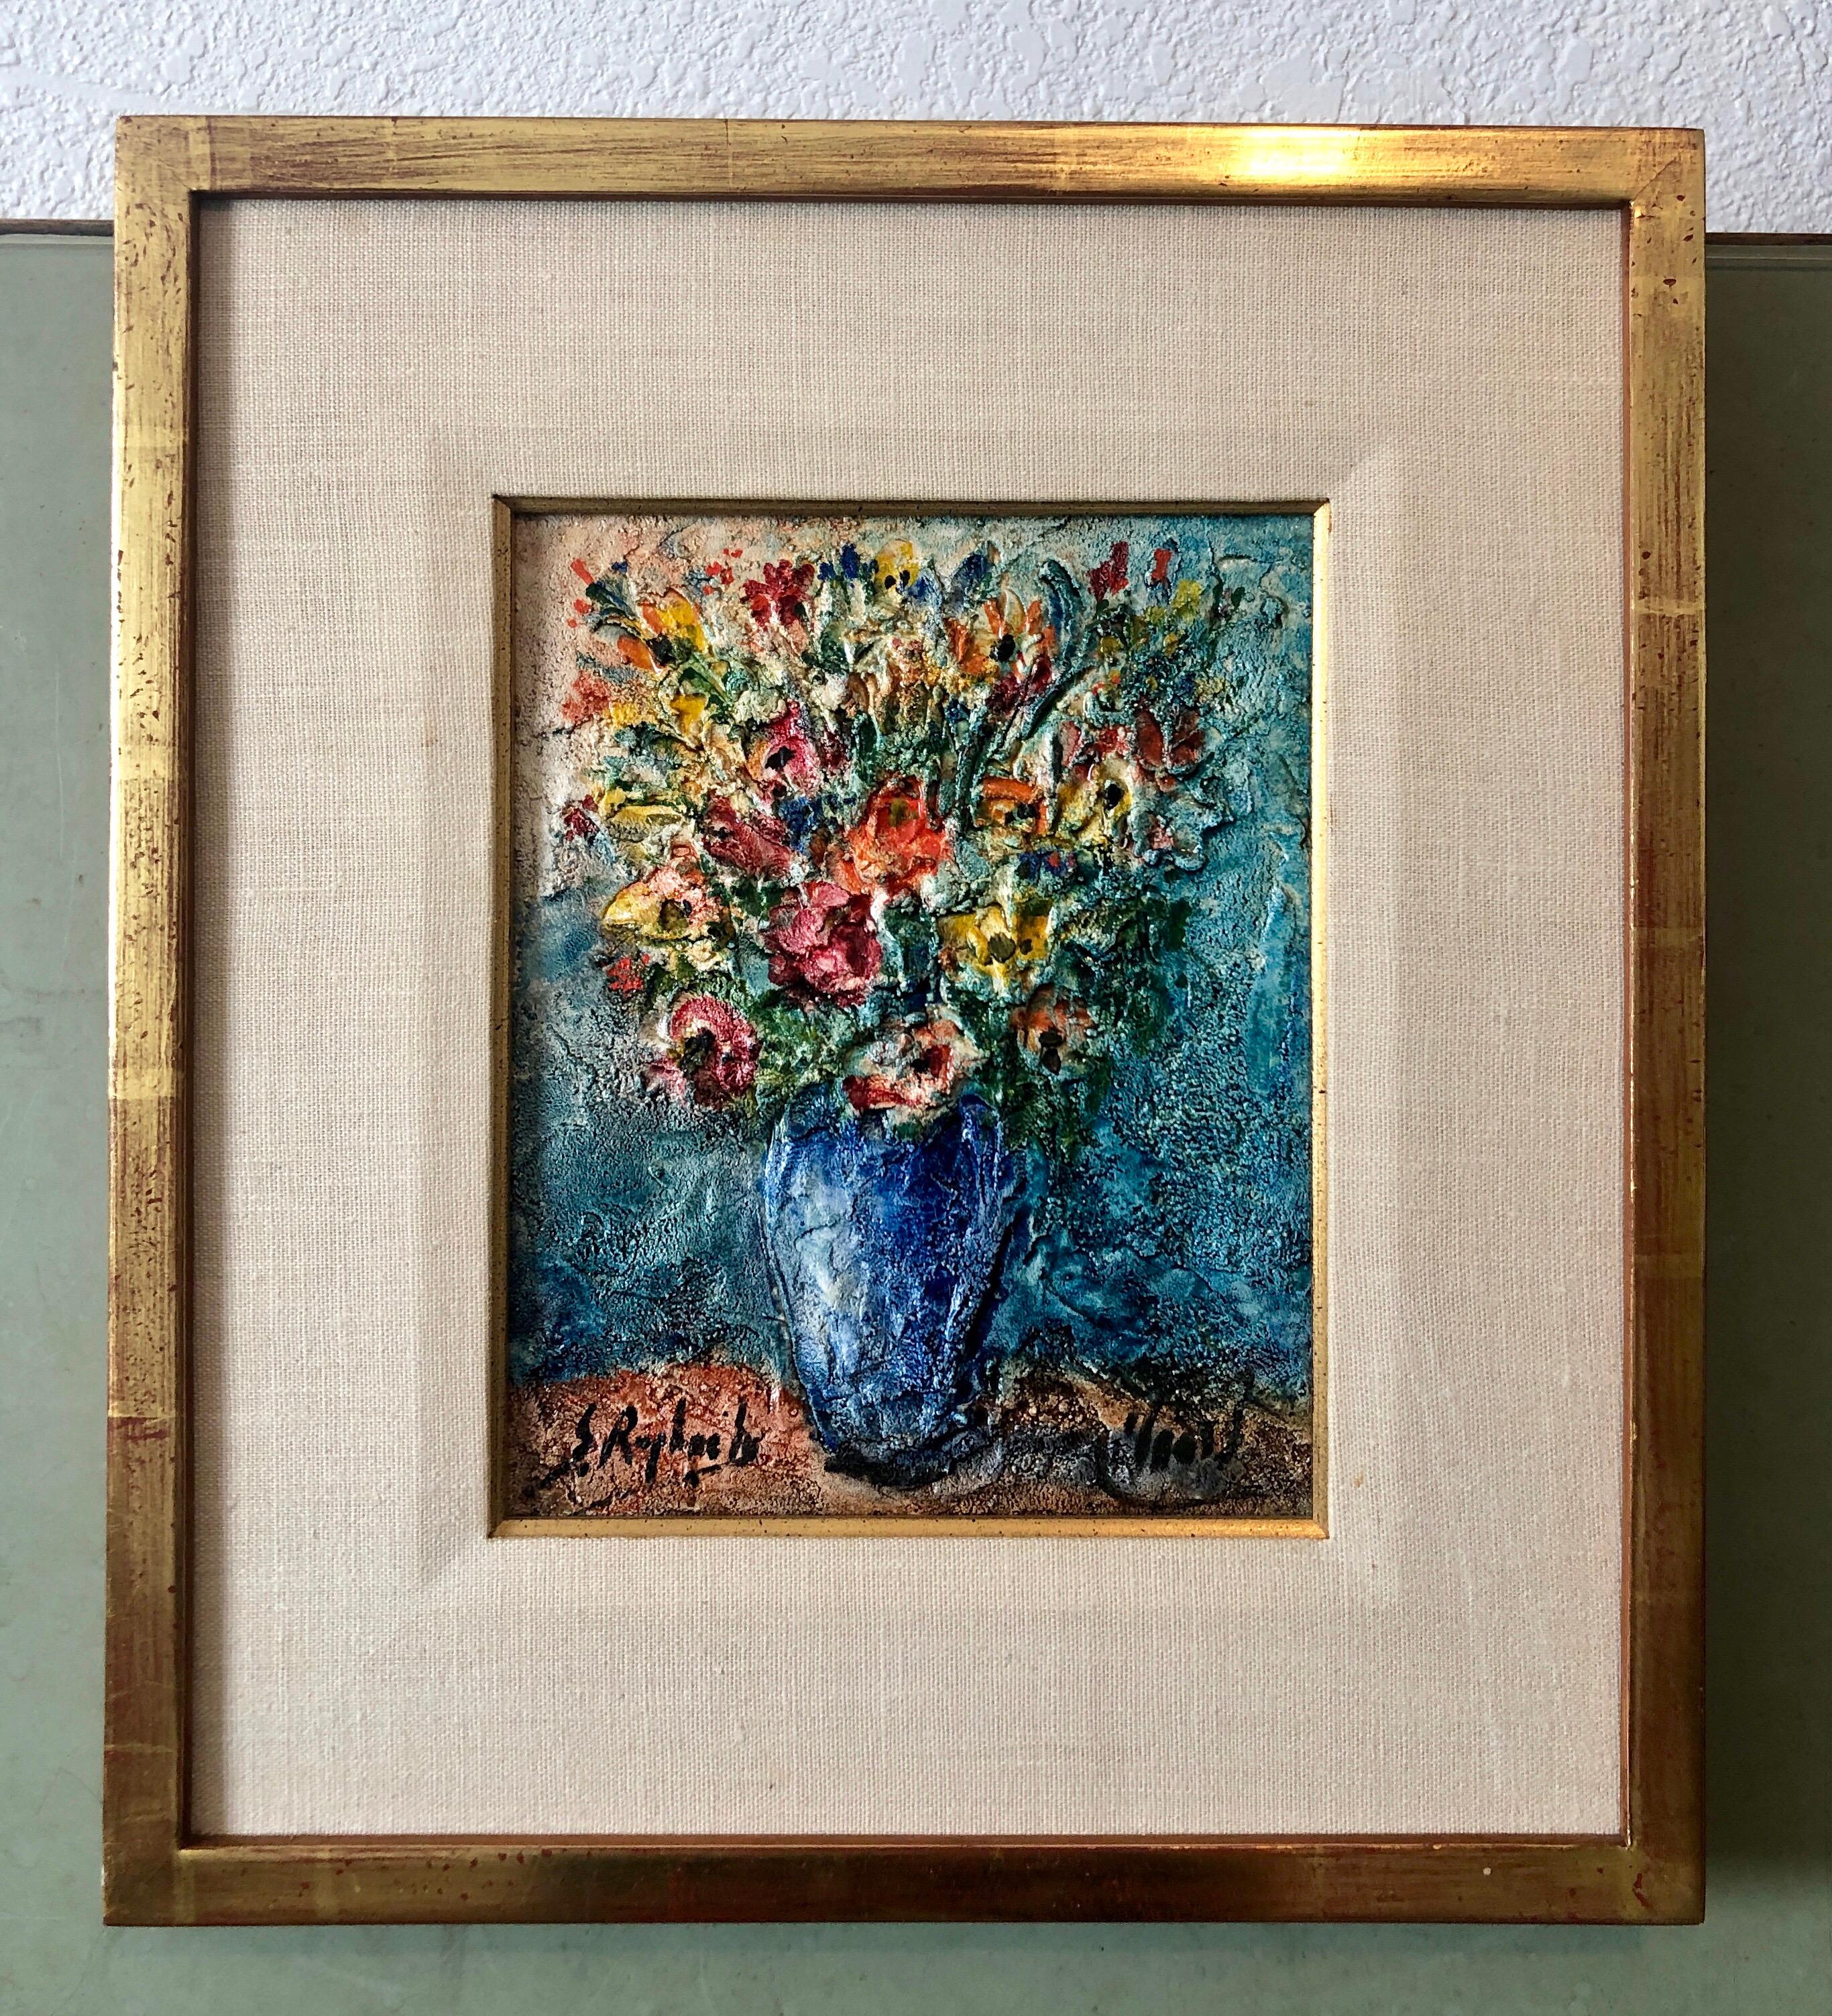 Vase of Flowers Judaica Oil Painting Israeli Jewish Rabbi Artist After Chagall 2